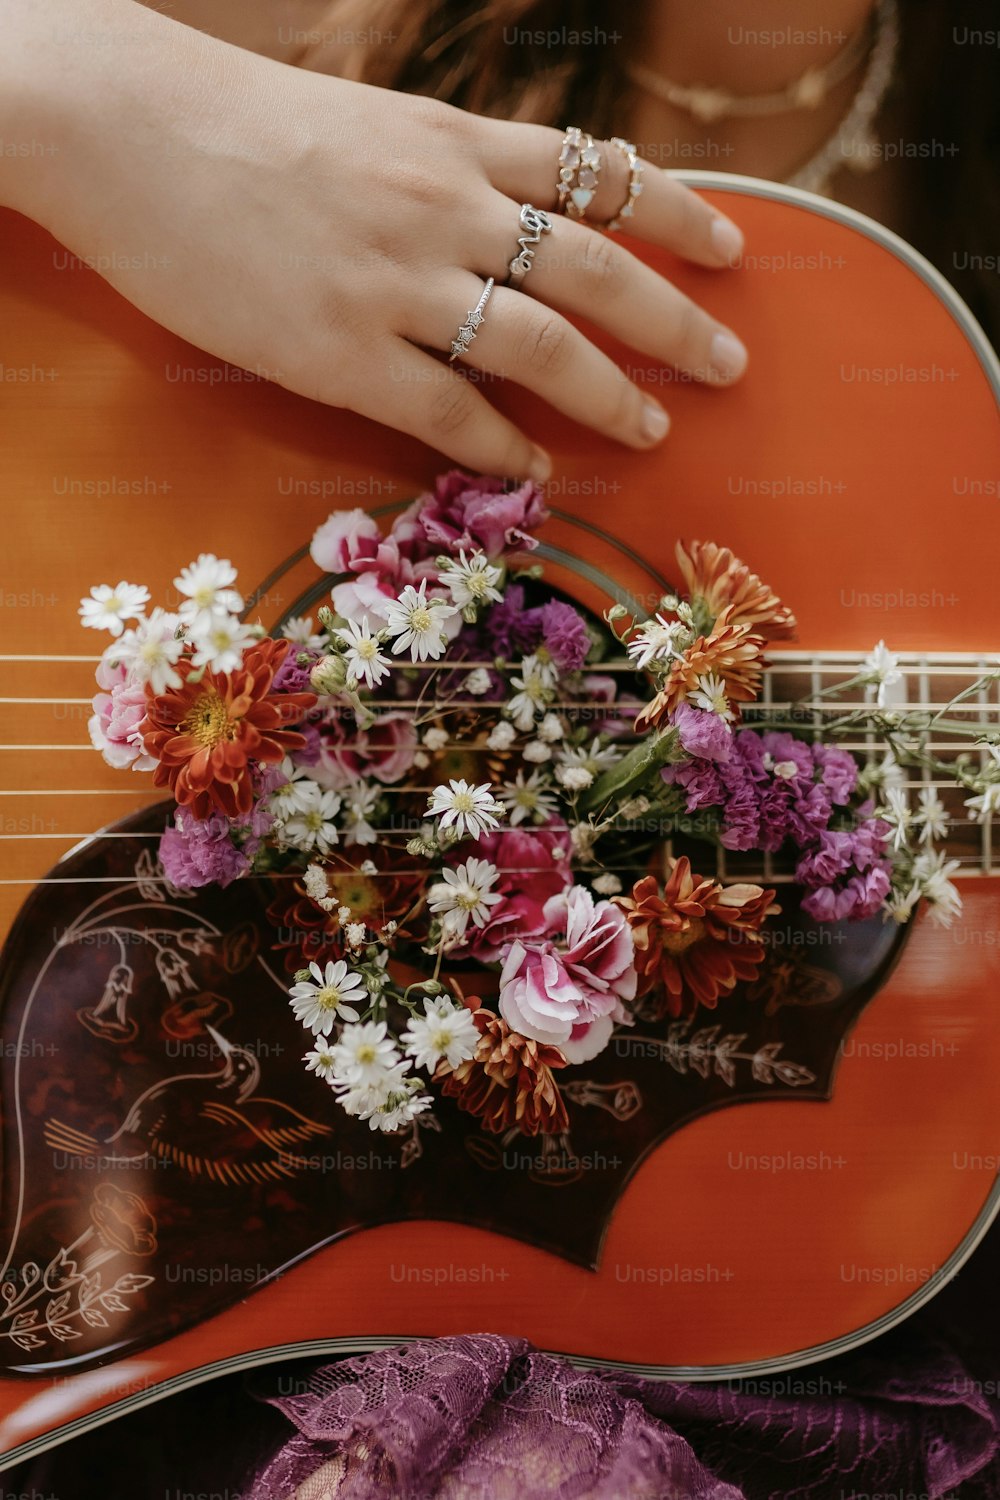 una persona sosteniendo una guitarra con flores en ella